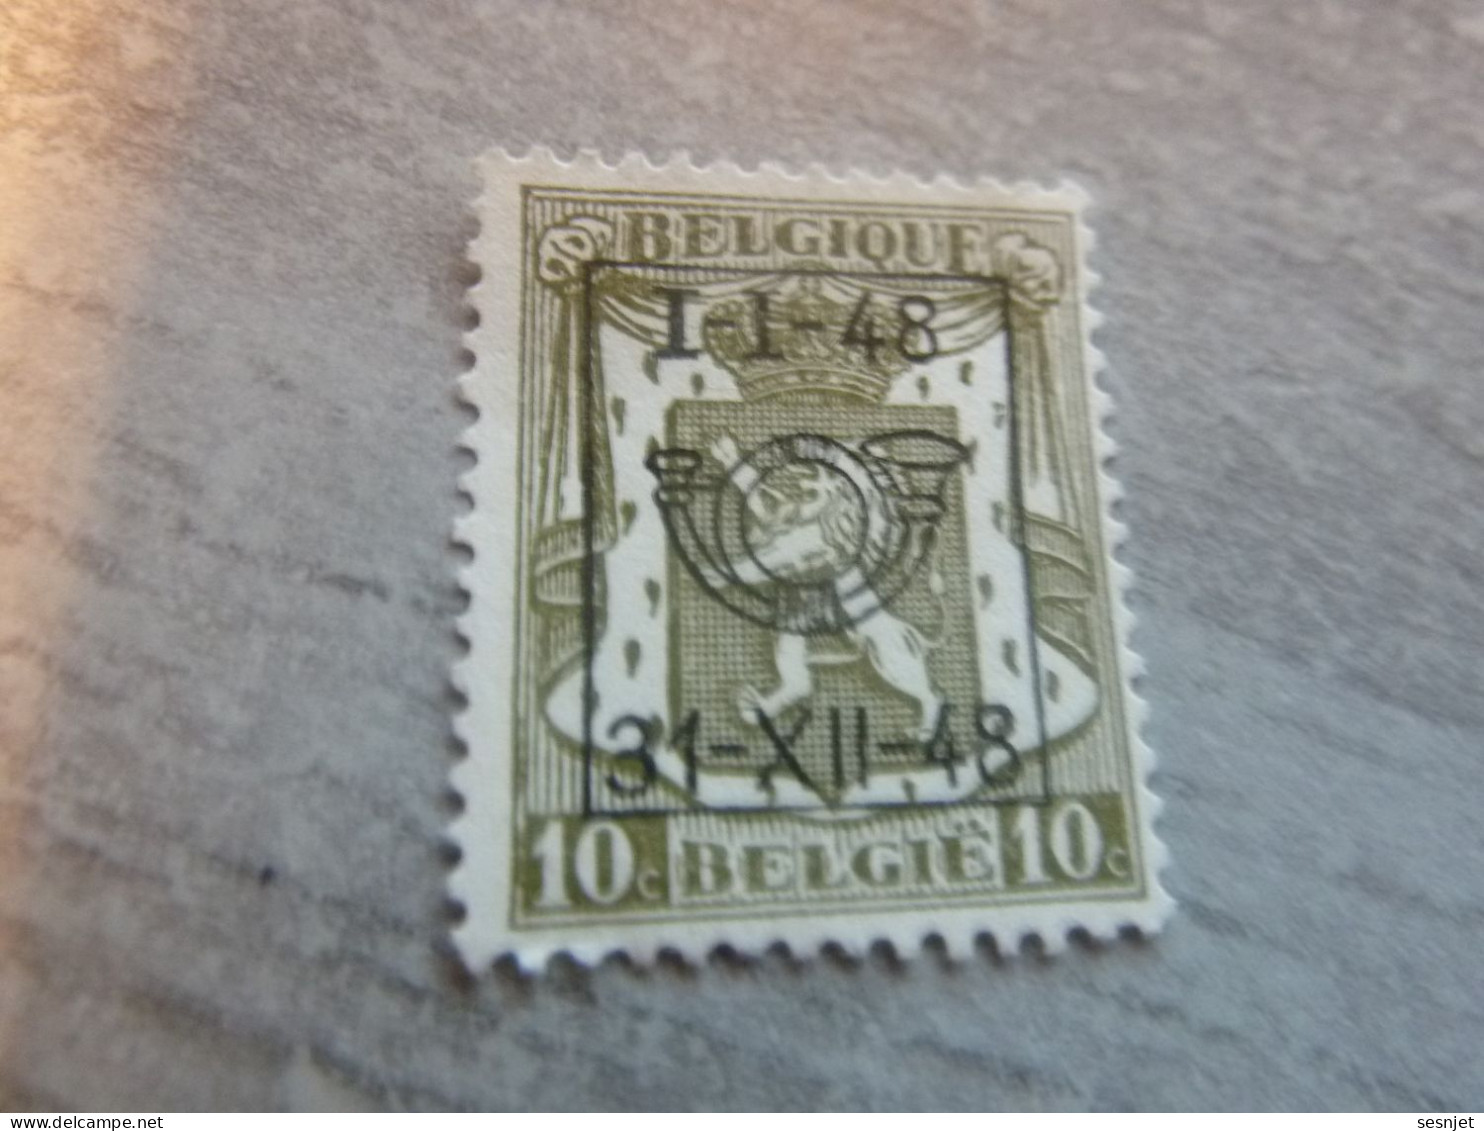 Belgique - Lion - Préoblitéré - 10c. - Gris - Neuf - Année 1948 - - Typografisch 1951-80 (Cijfer Op Leeuw)